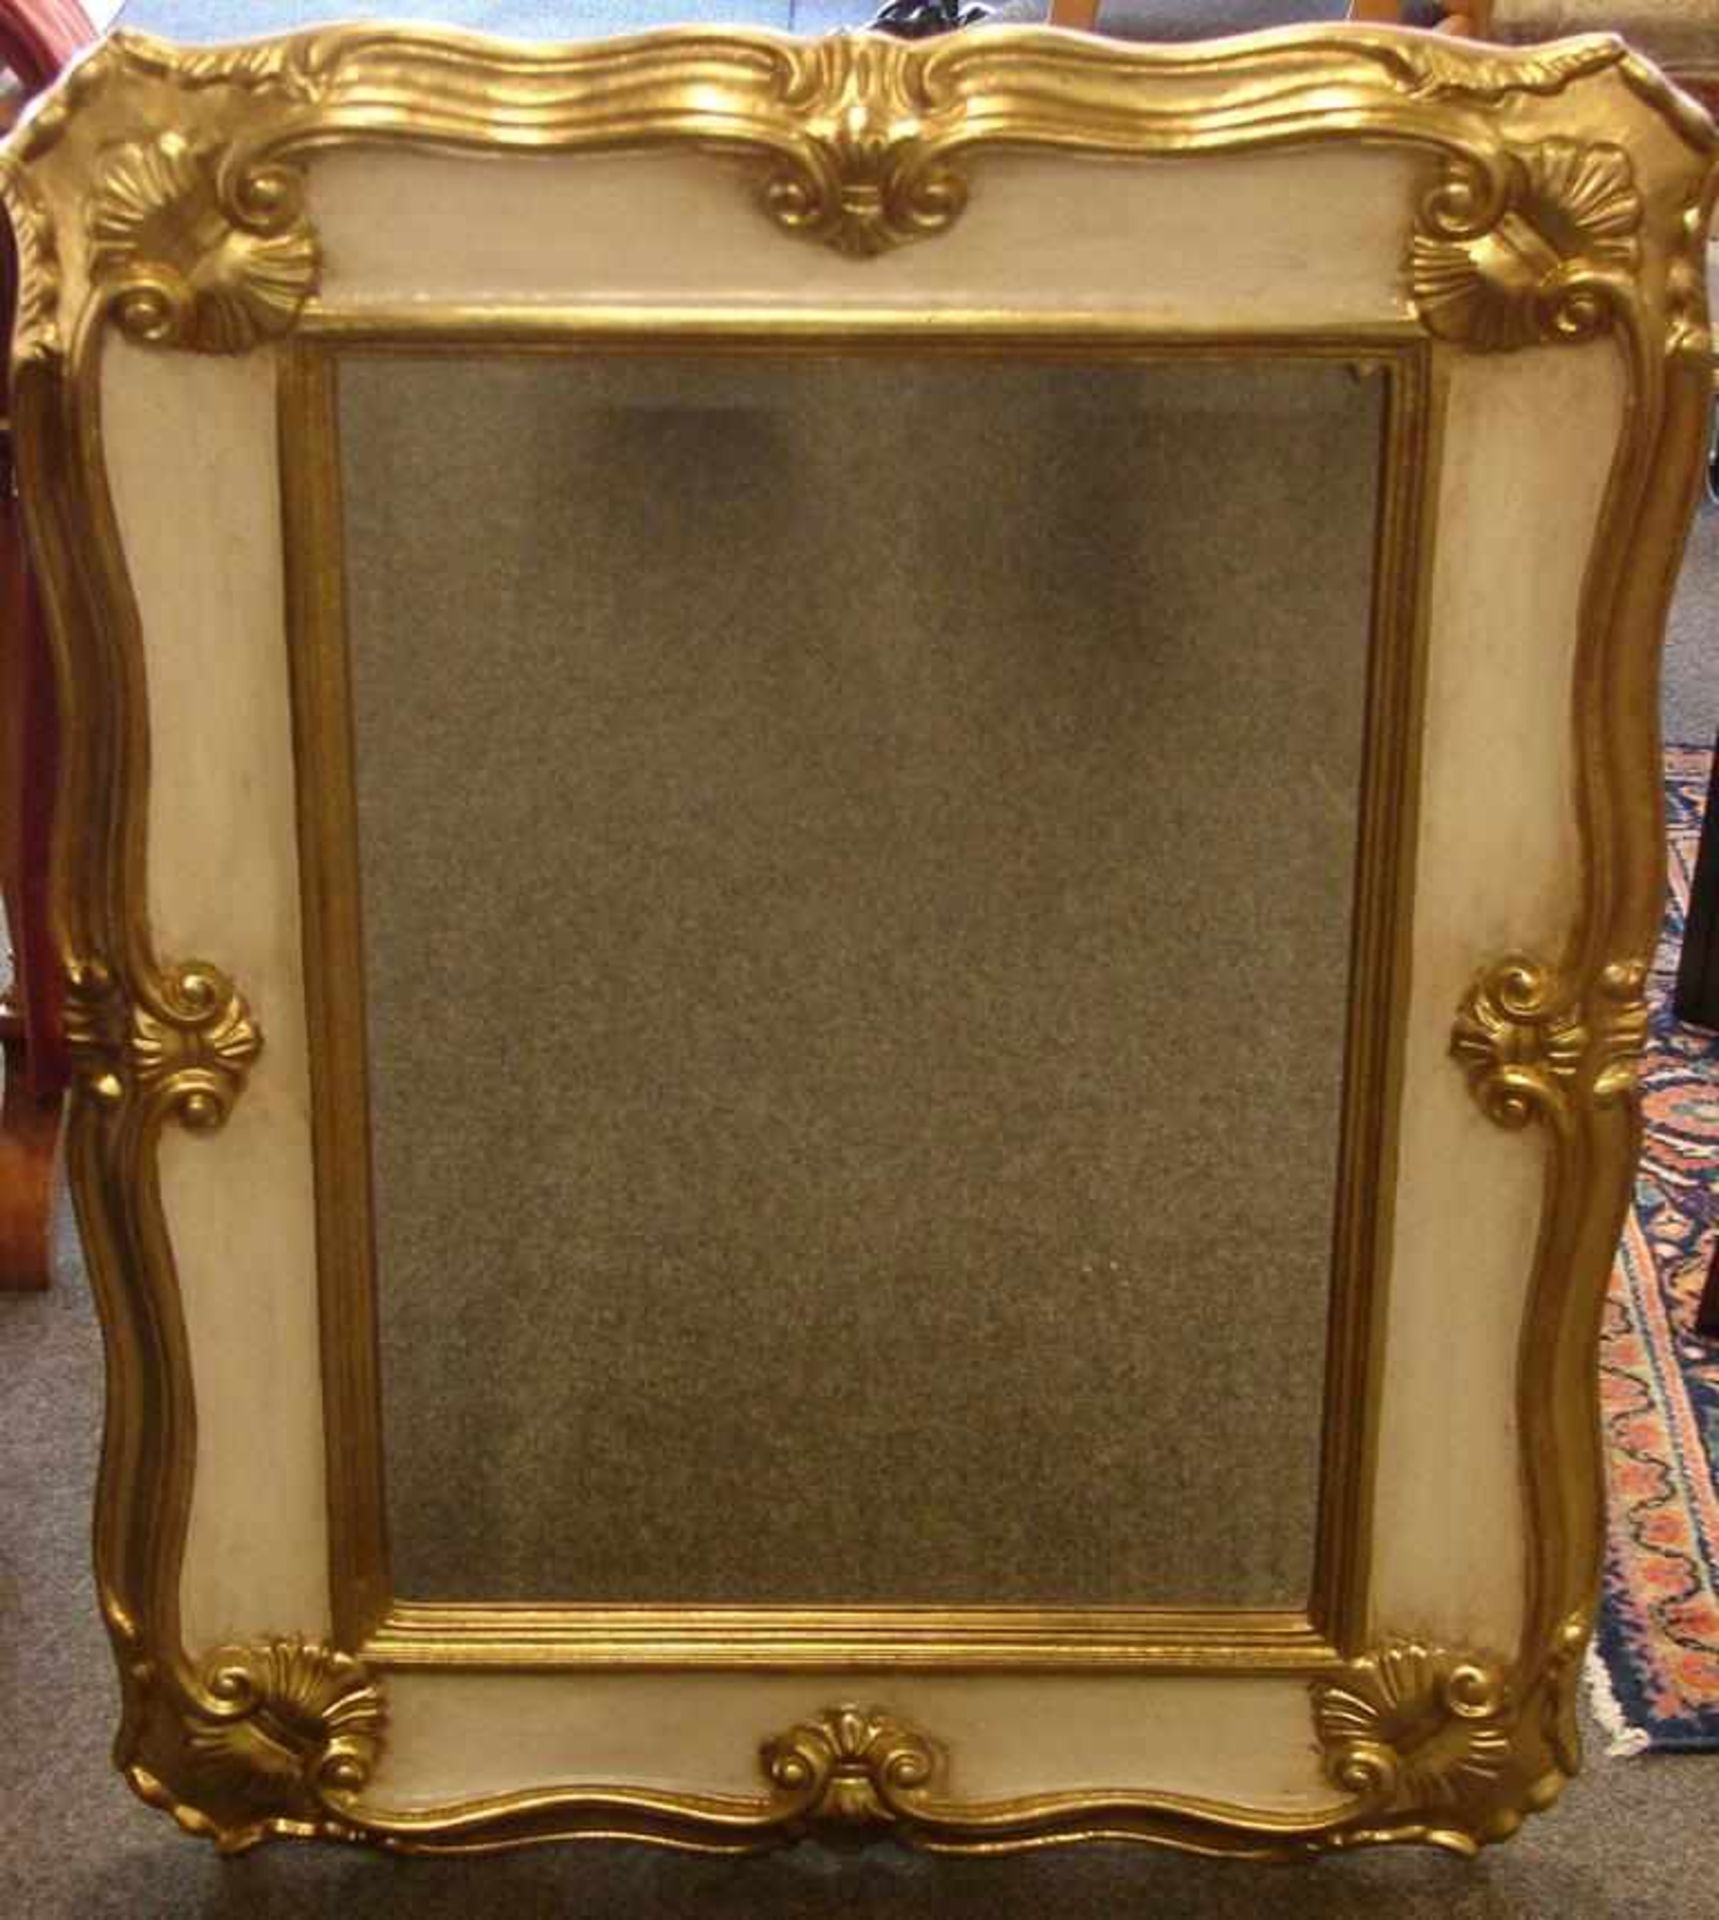 Barockstilspiegel, reich verziert, Spiegelfläche umlaufend mit Facettenschliff, ca. 95 x 76 cm